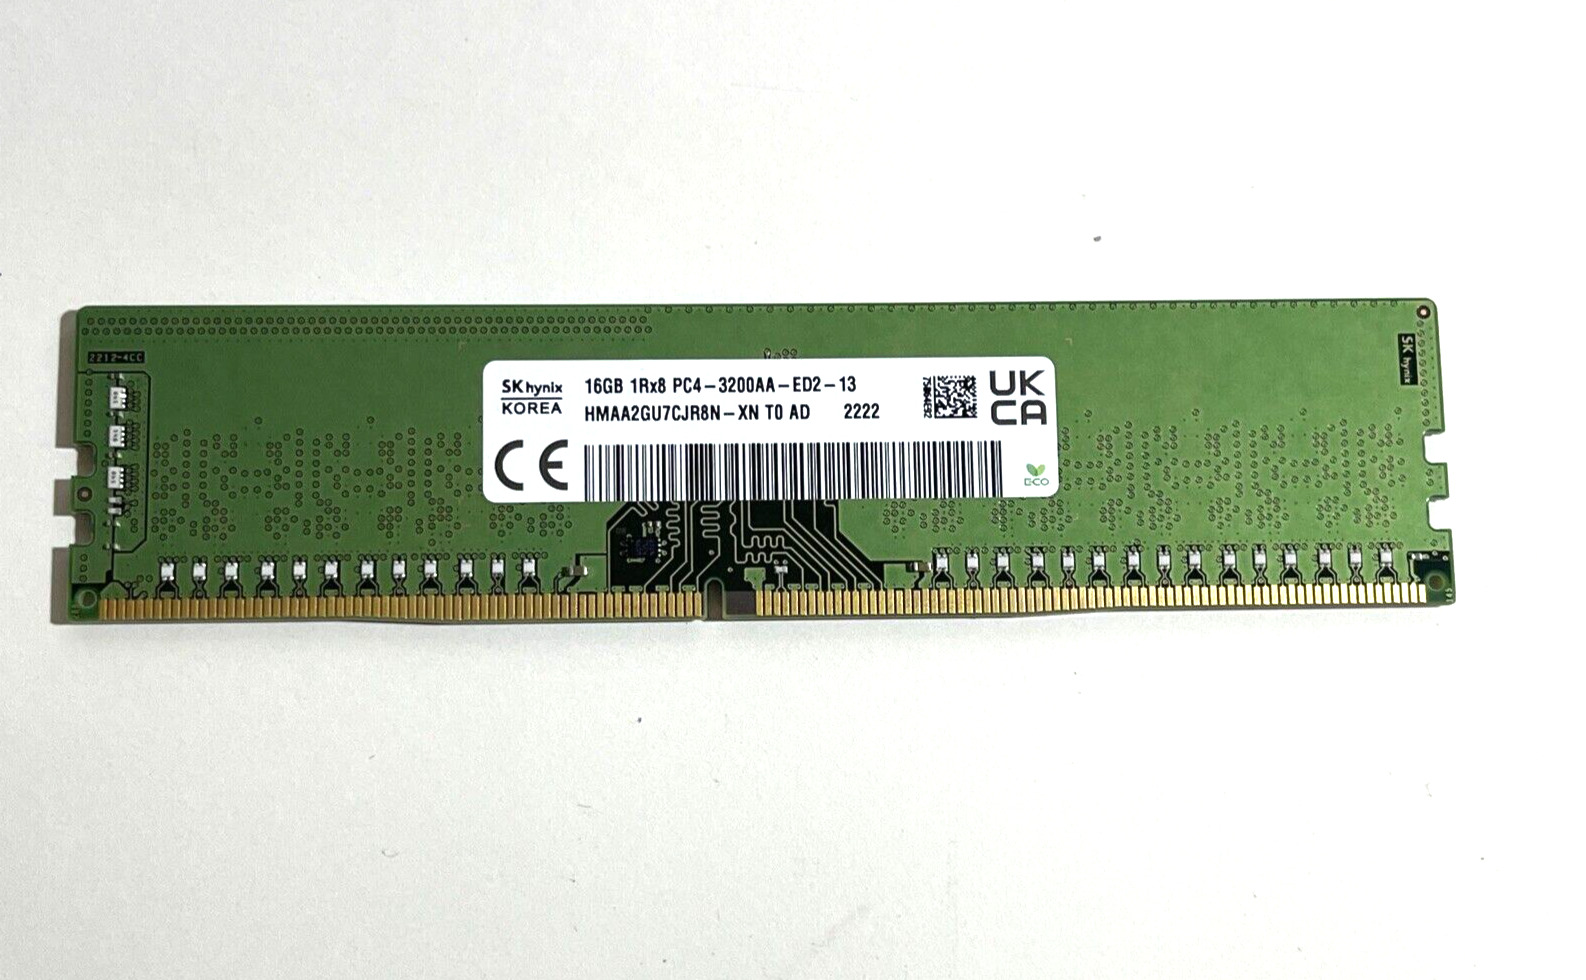 HP Hynix 16GB HMAA2GU7CJR8N-XN PC4-3200AA DDR4 Unbuff Dimm P43021-0A1